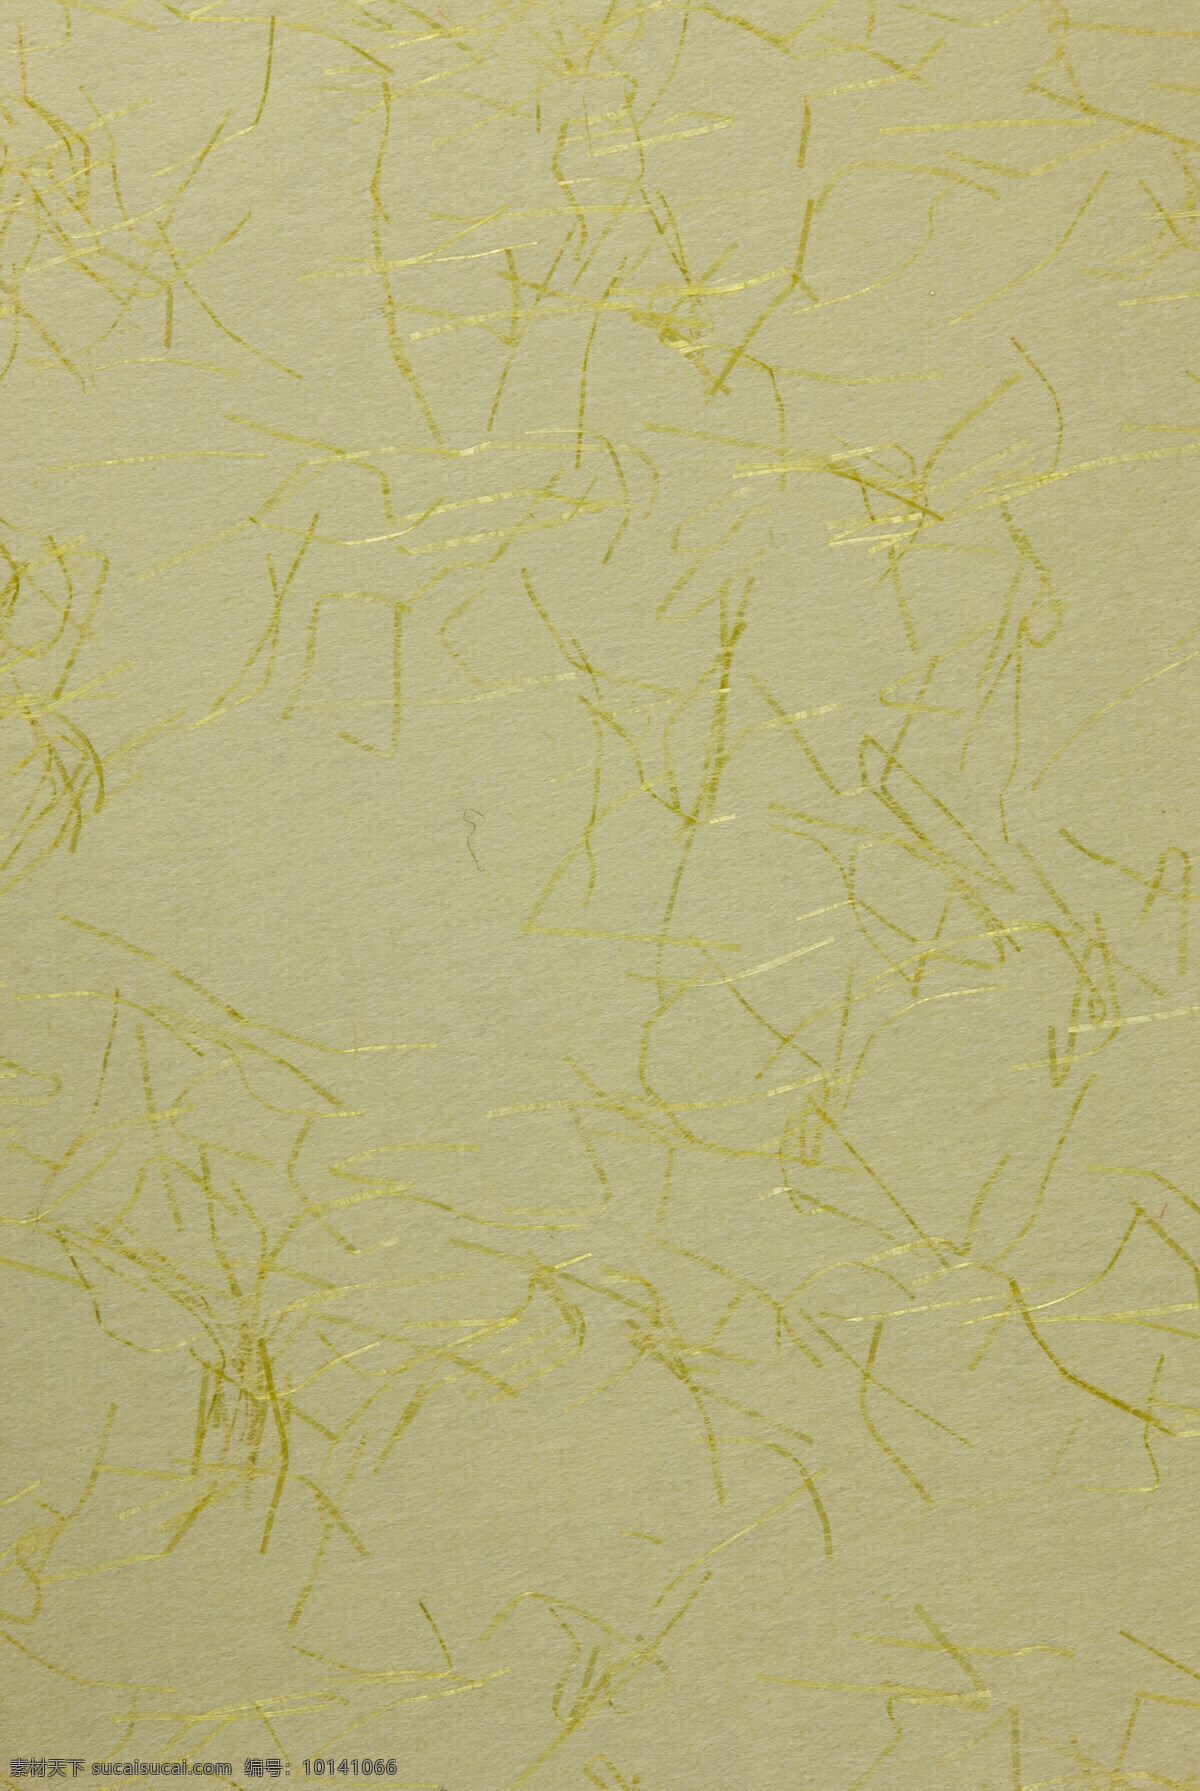 特种纸 艺术纸 纸 纸张 黄色纸张 纤维纸 装帧纸 肌理效果 纸张底纹 艺术纸张 文化艺术